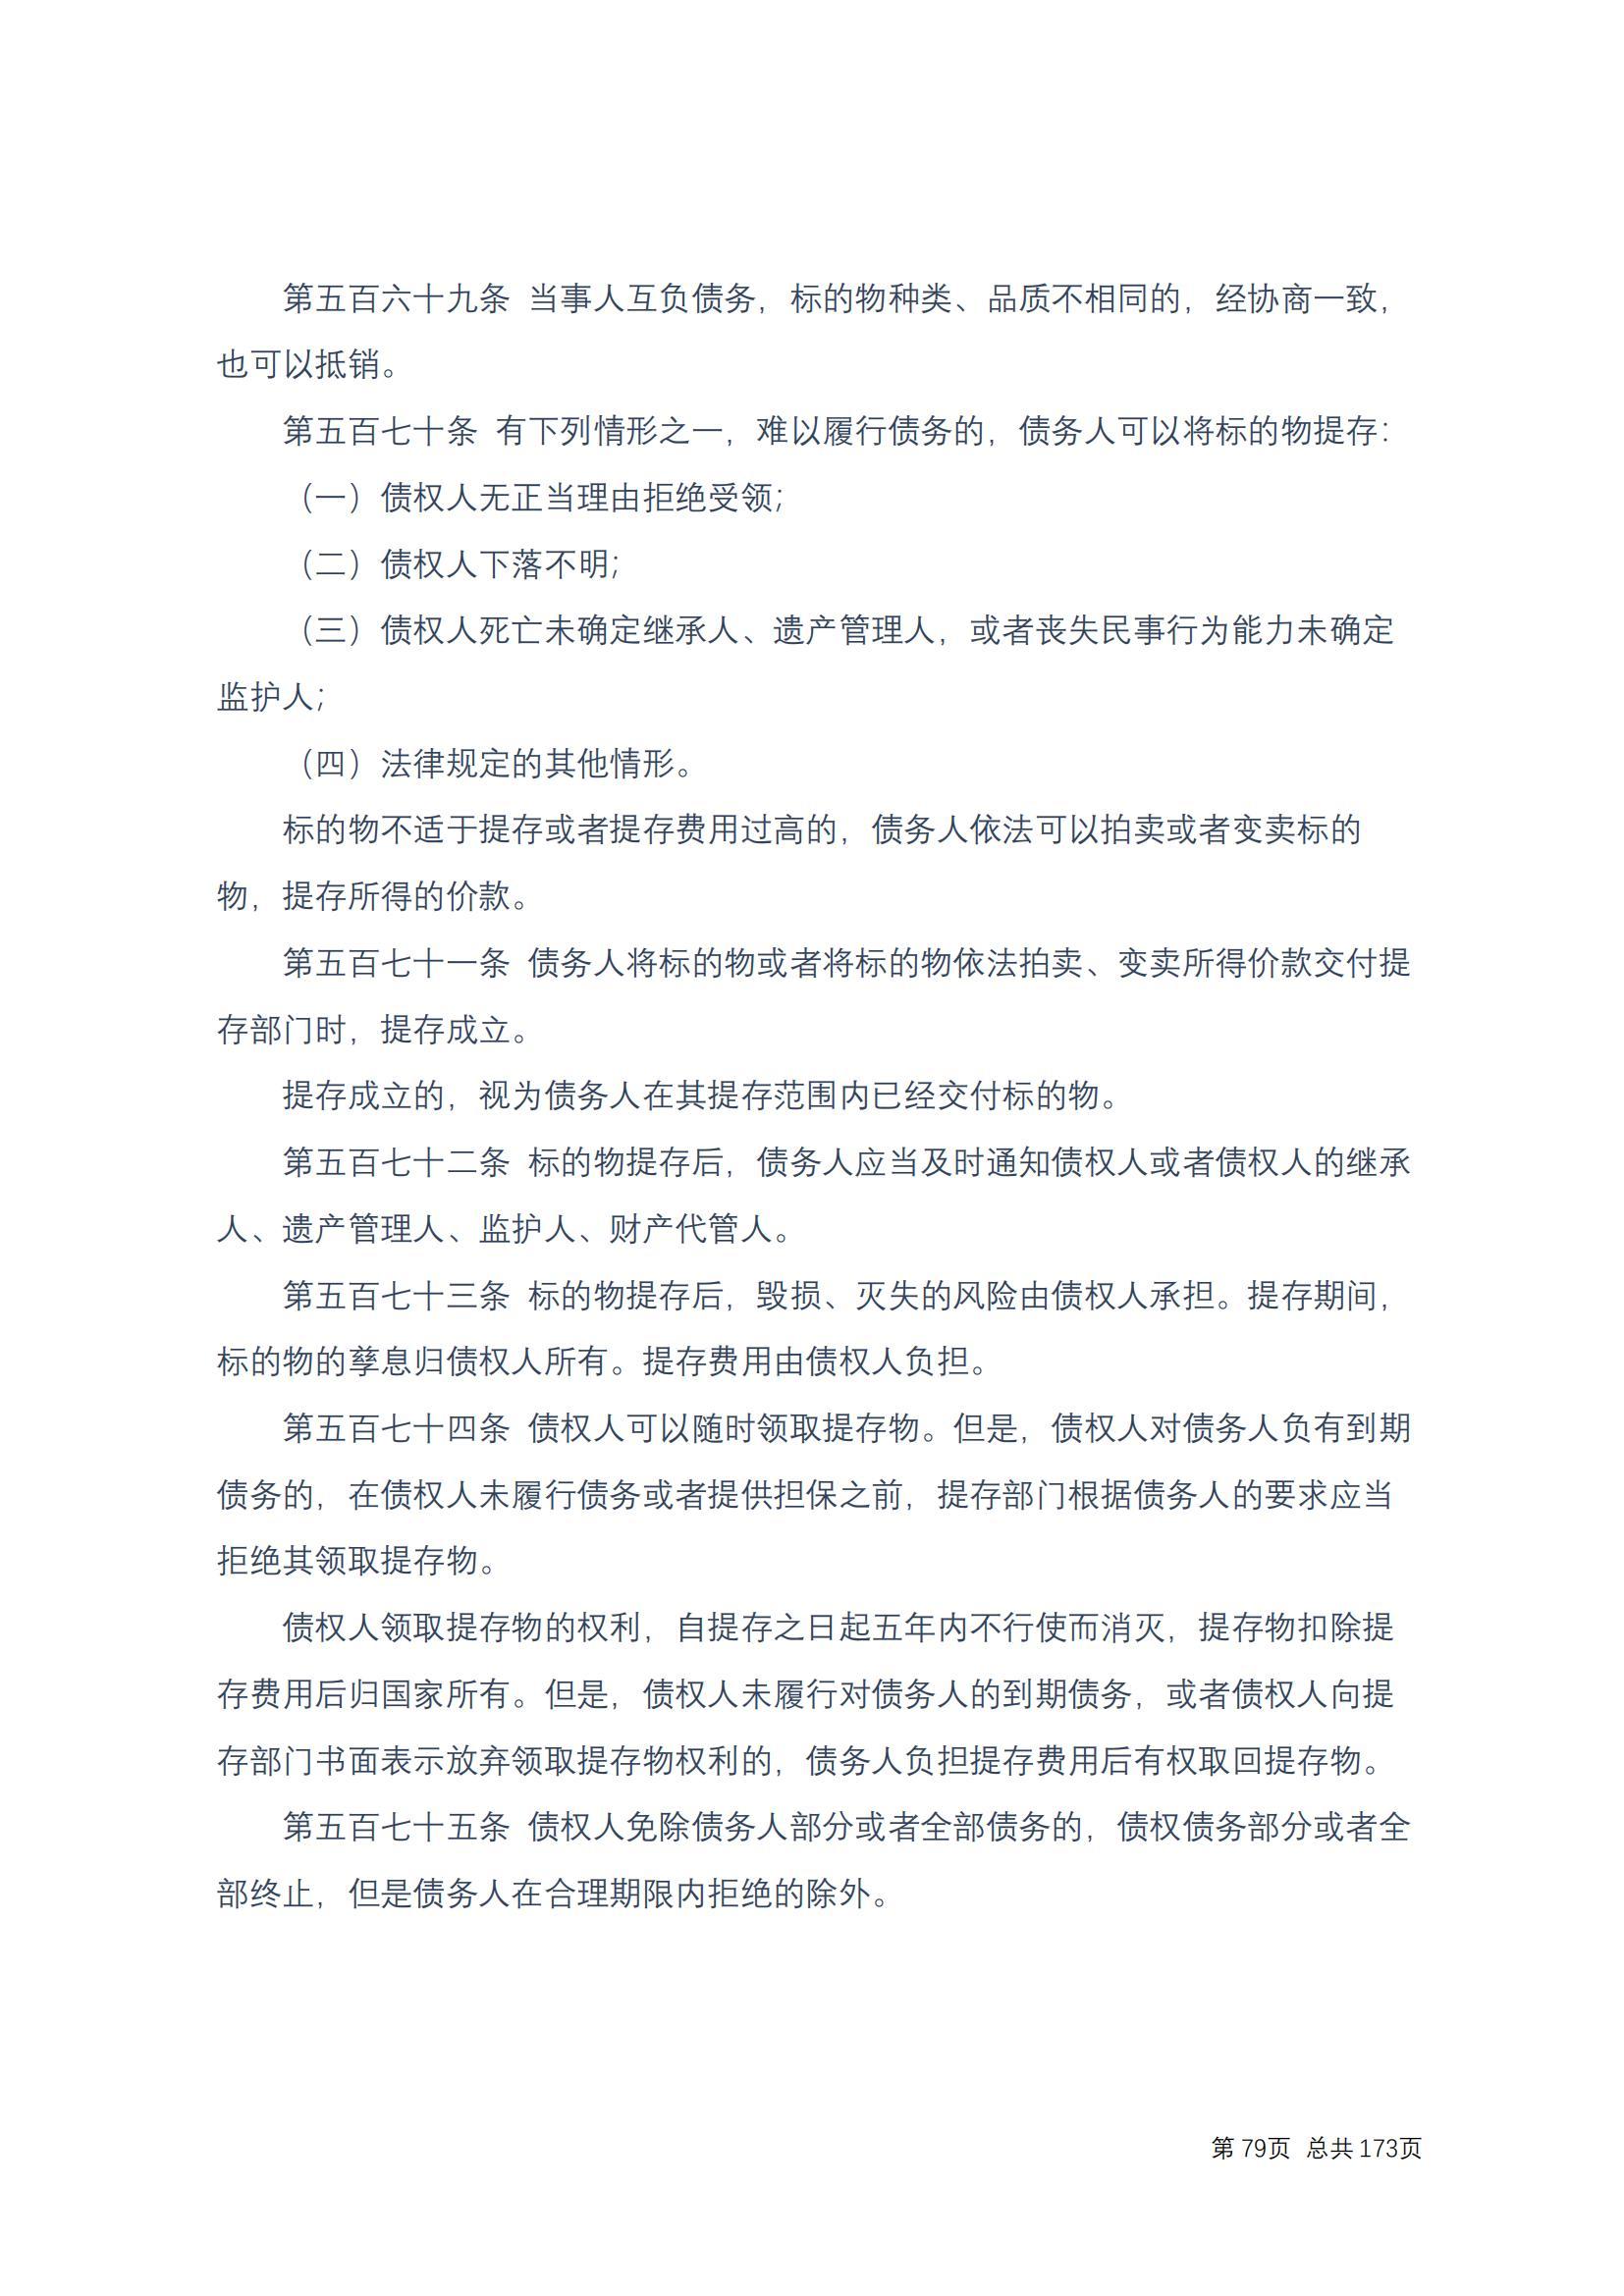 中华人民共和国民法典 修改过_78